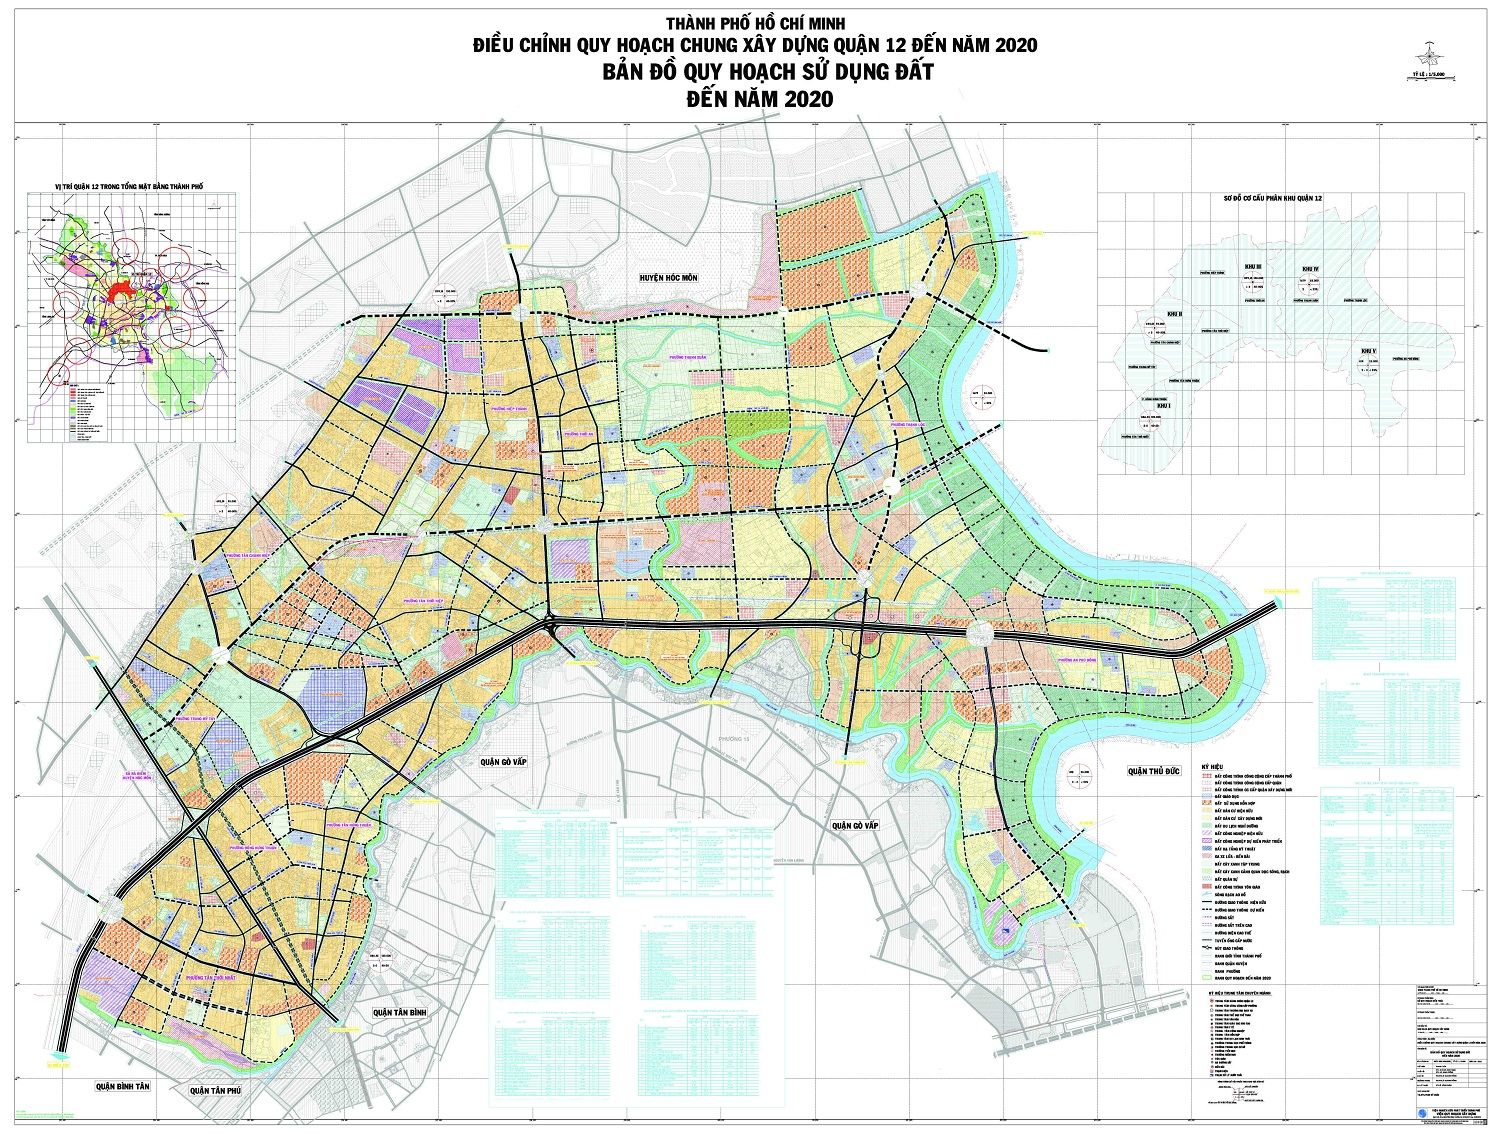 Xem bản đồ quy hoạch quận 12 đến năm 2020 ở thành phố HCM